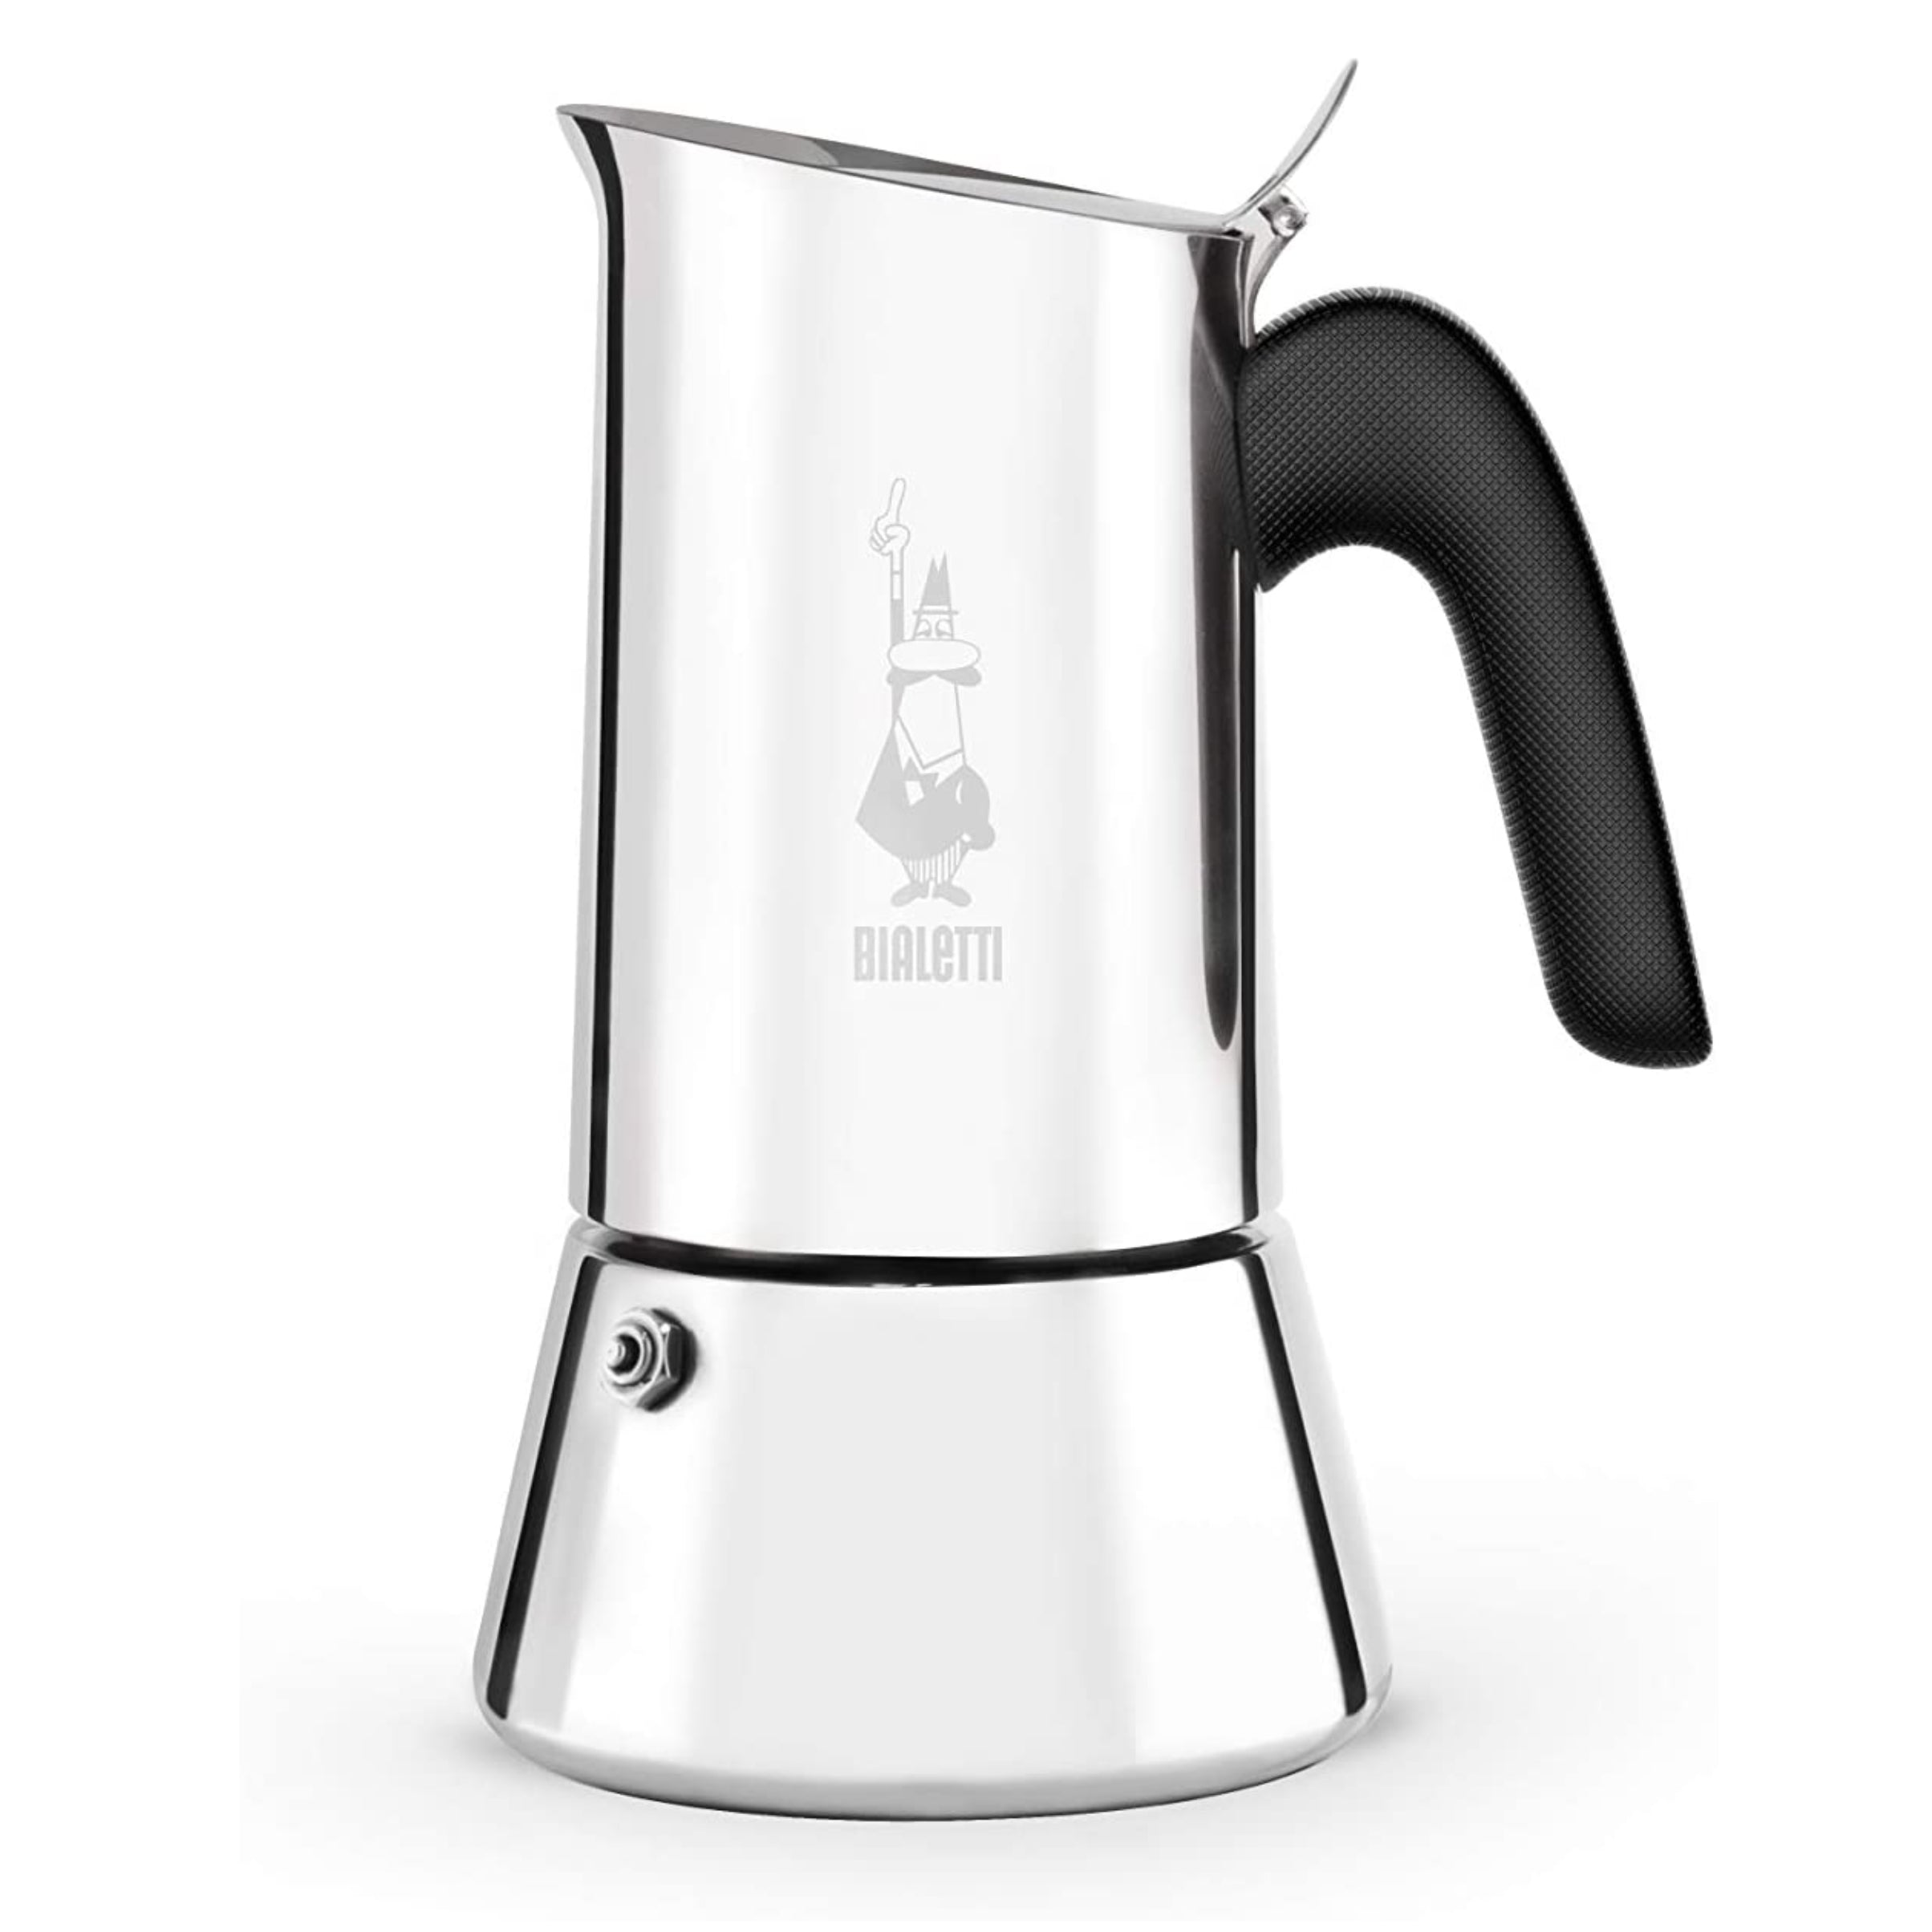 Bialetti 12-Cup Stovetop Espresso Coffee Maker Pot